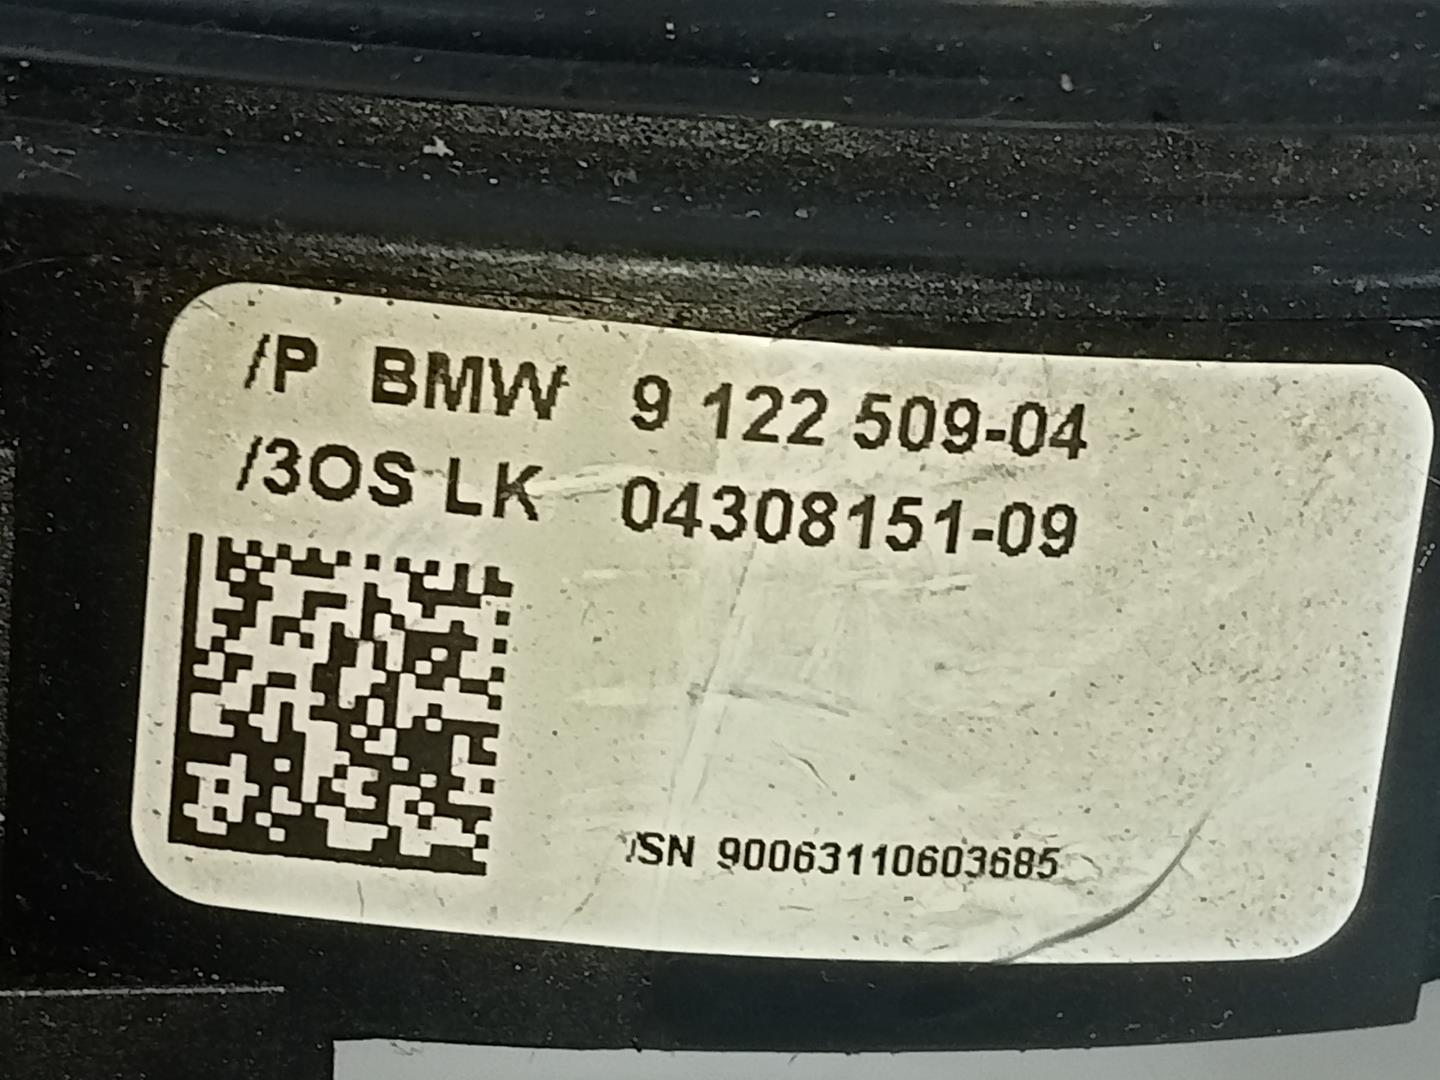 BMW 1 Series E81/E82/E87/E88 (2004-2013) Vairo ritė (kasetė) 912250904, 0430815109, E3-A2-24-1 21819245